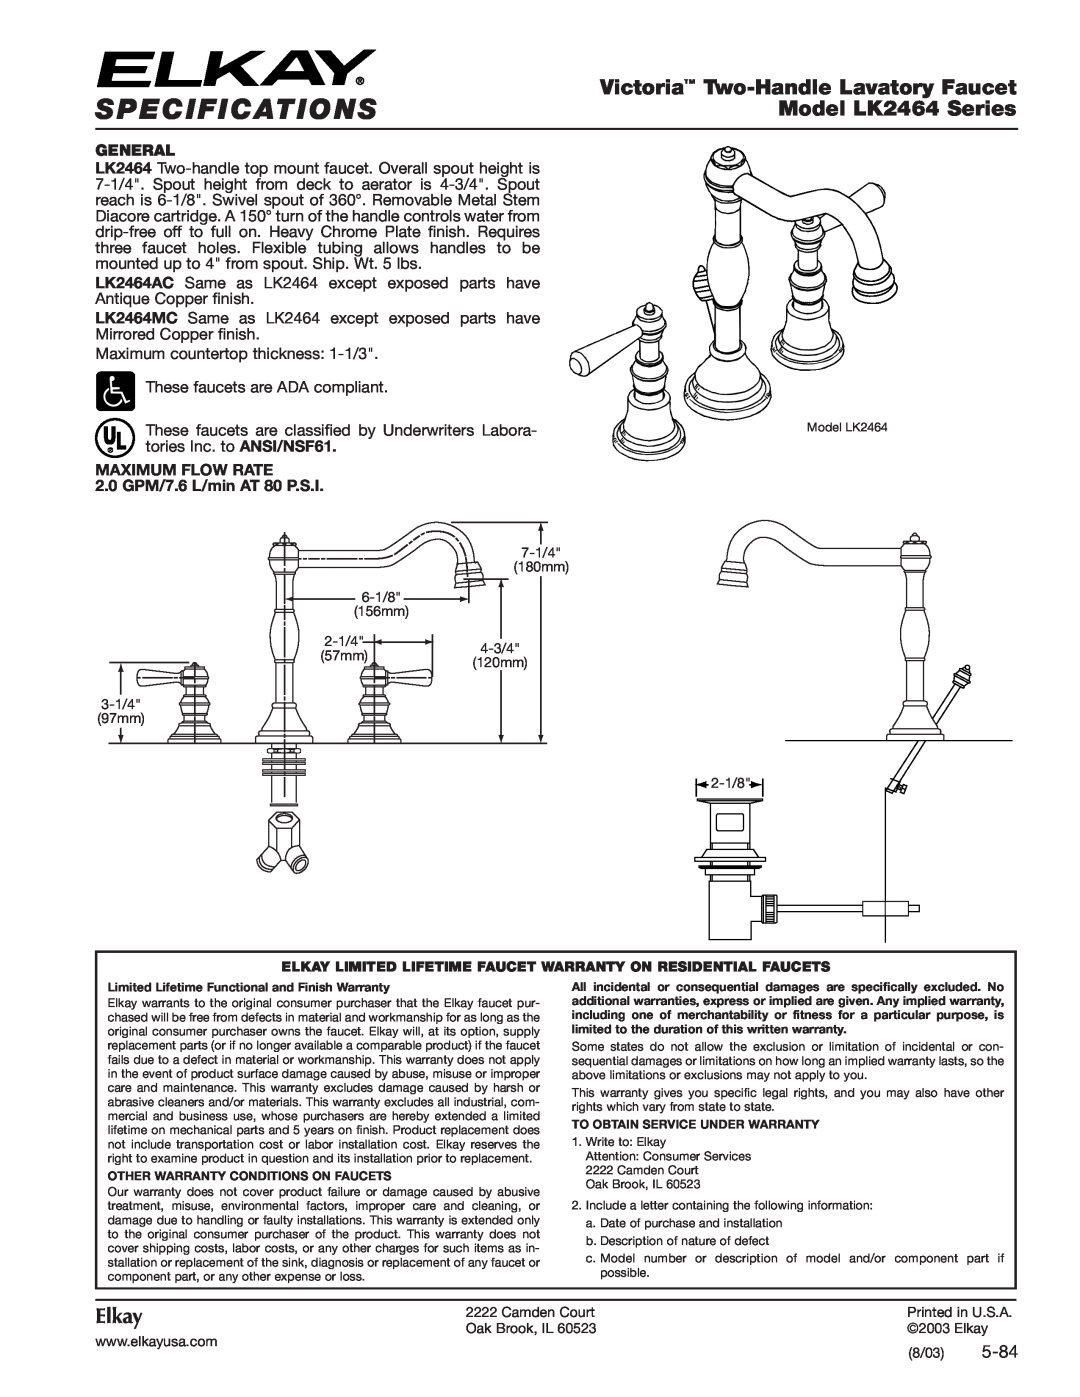 Elkay specifications Specifications, Victoria Two-HandleLavatory Faucet, Model LK2464 Series, Elkay, 5-84, General 